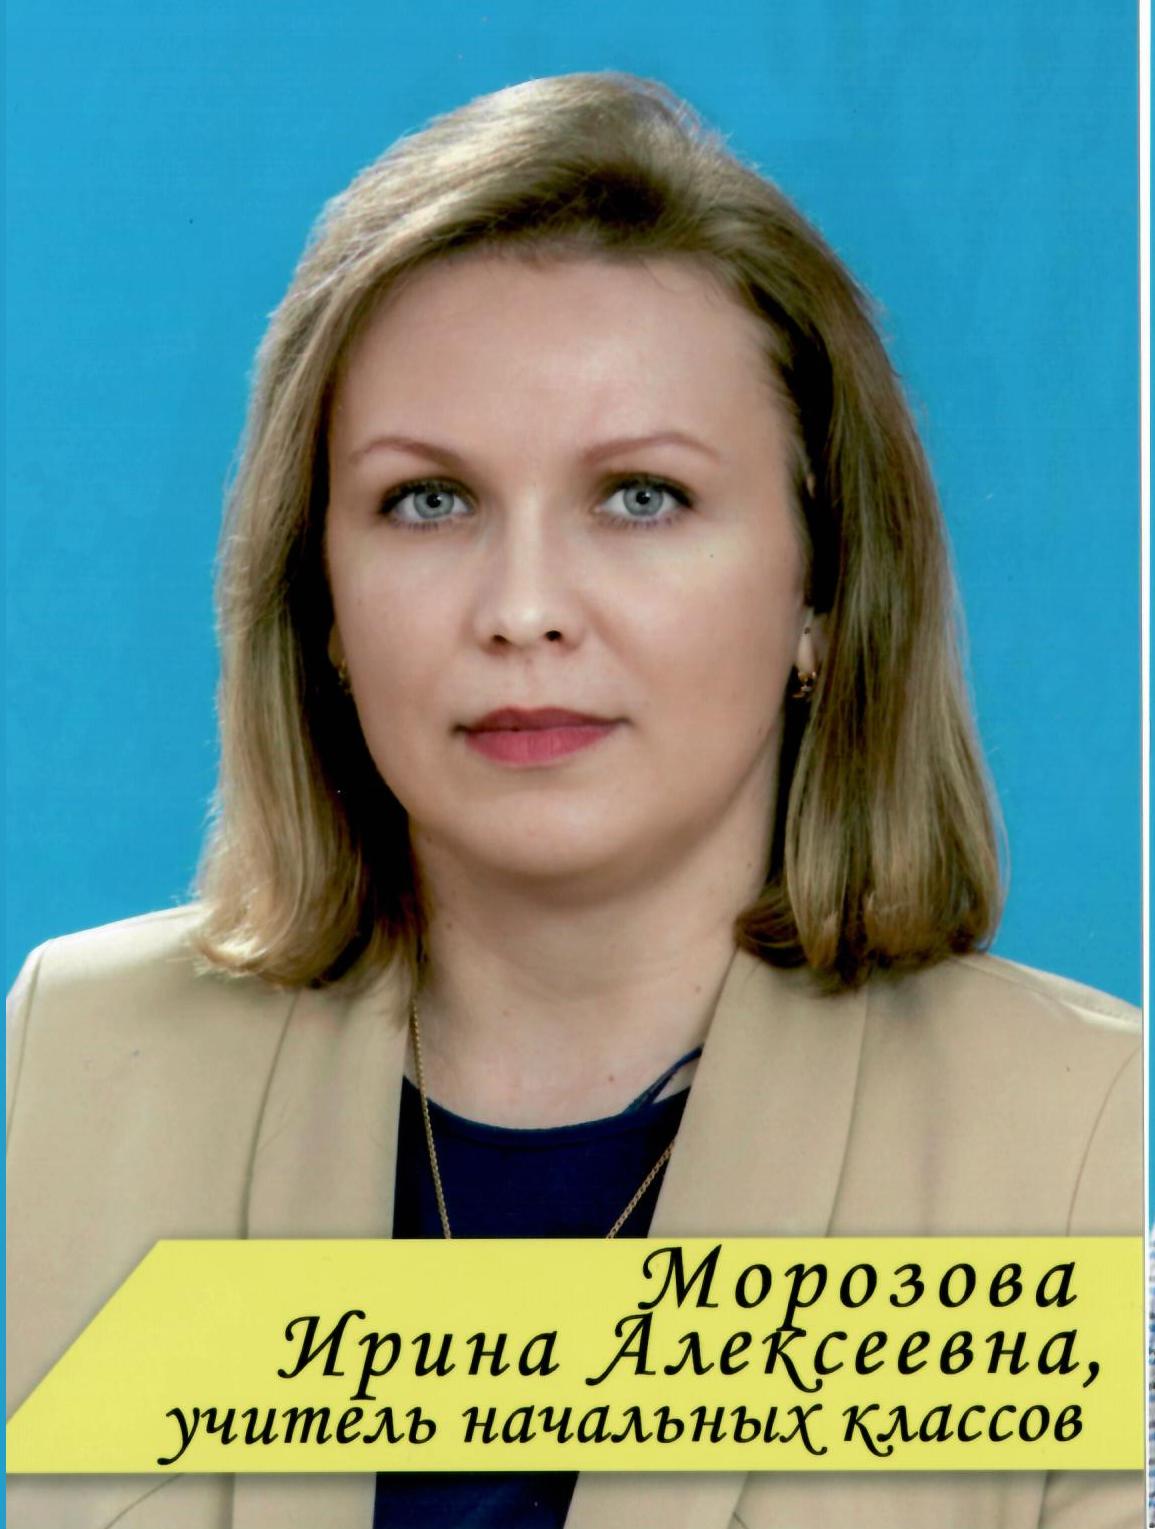 Морозова Ирина Алексеевна.